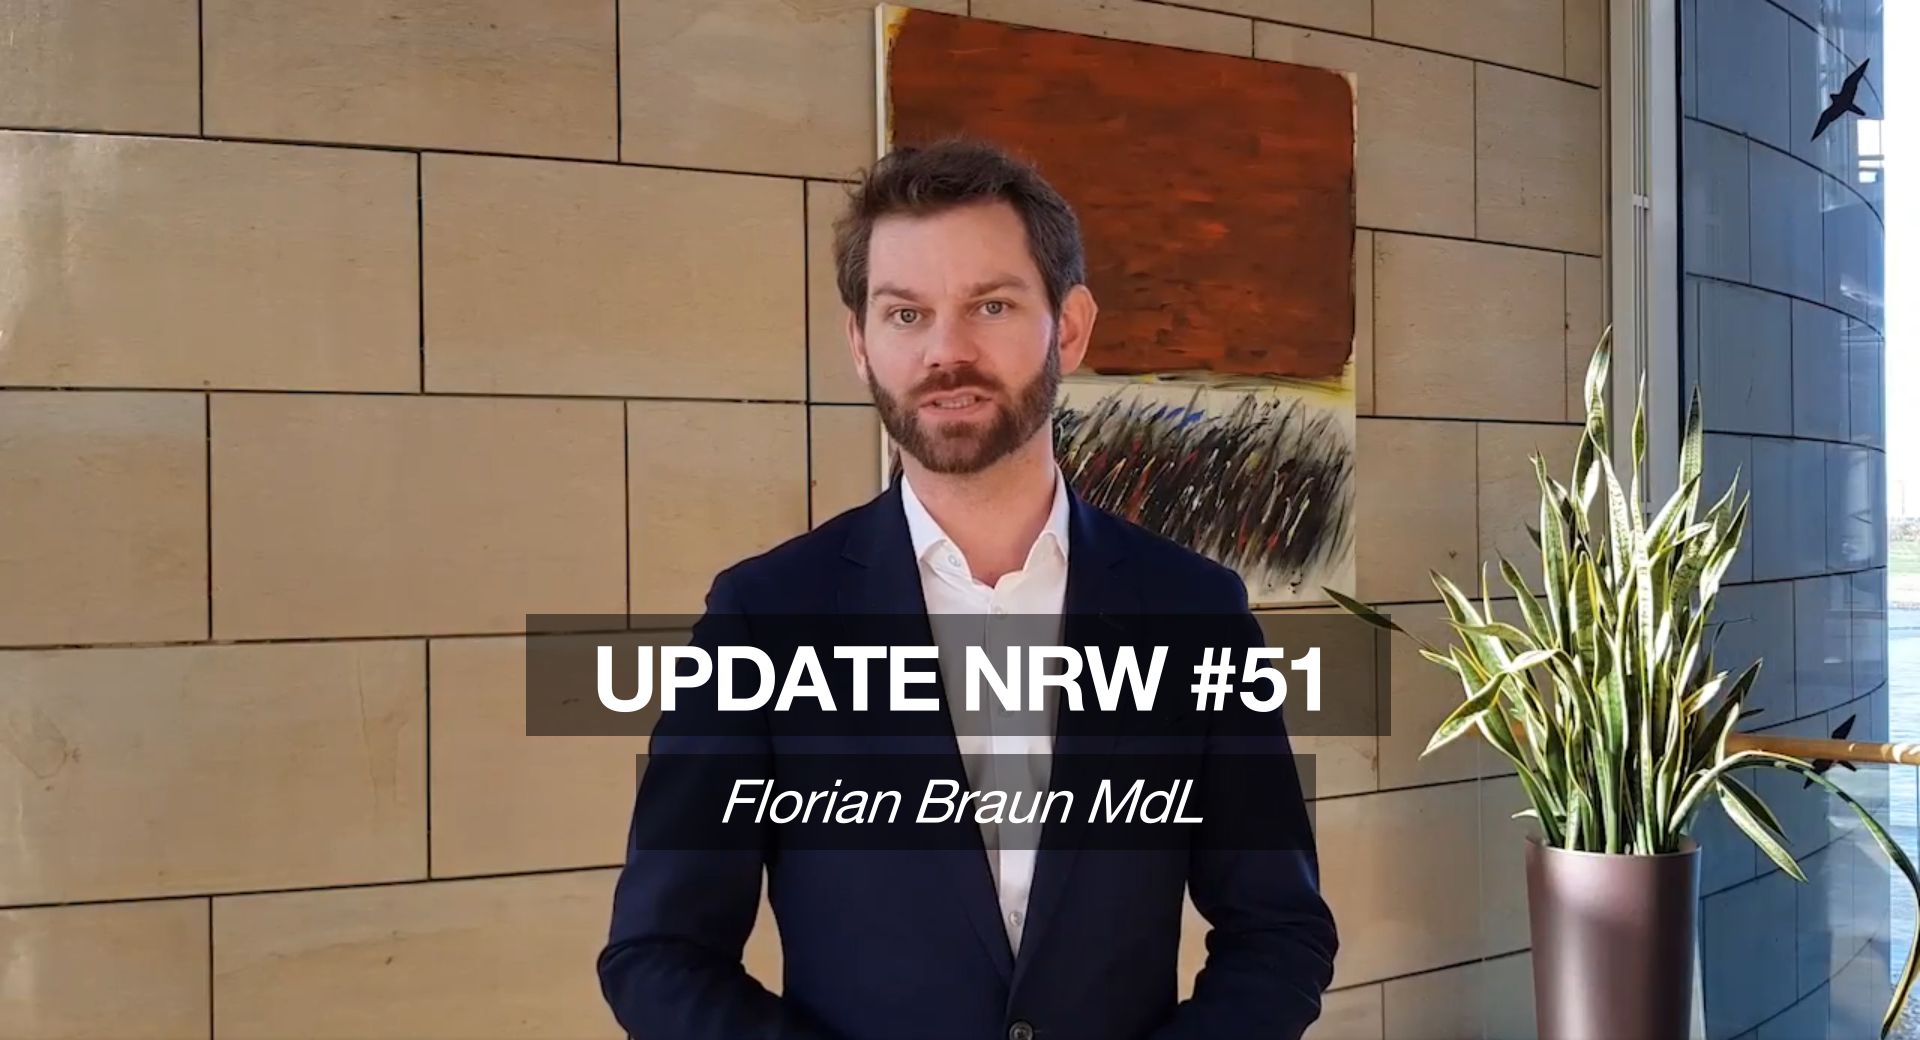 Florian Braun MdL: Update NRW #51